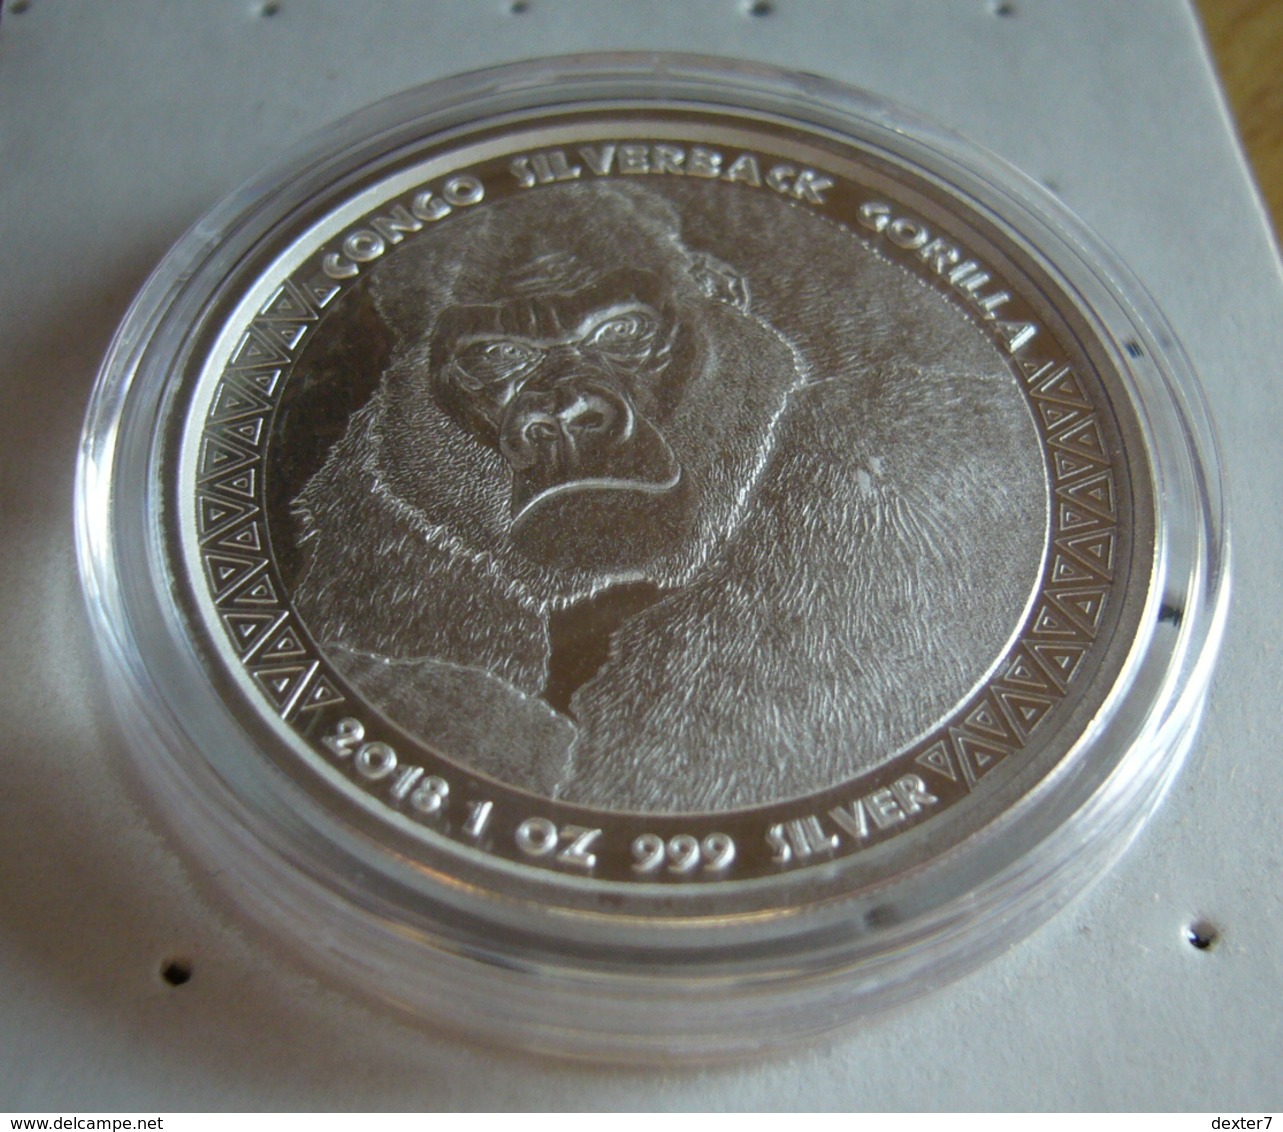 Congo, Gorilla 1 Oz 2018 Silver 999 Pure - 1 Oncia Argento Puro Bullion Scottsdale Mint - Congo (Repubblica Democratica 1998)